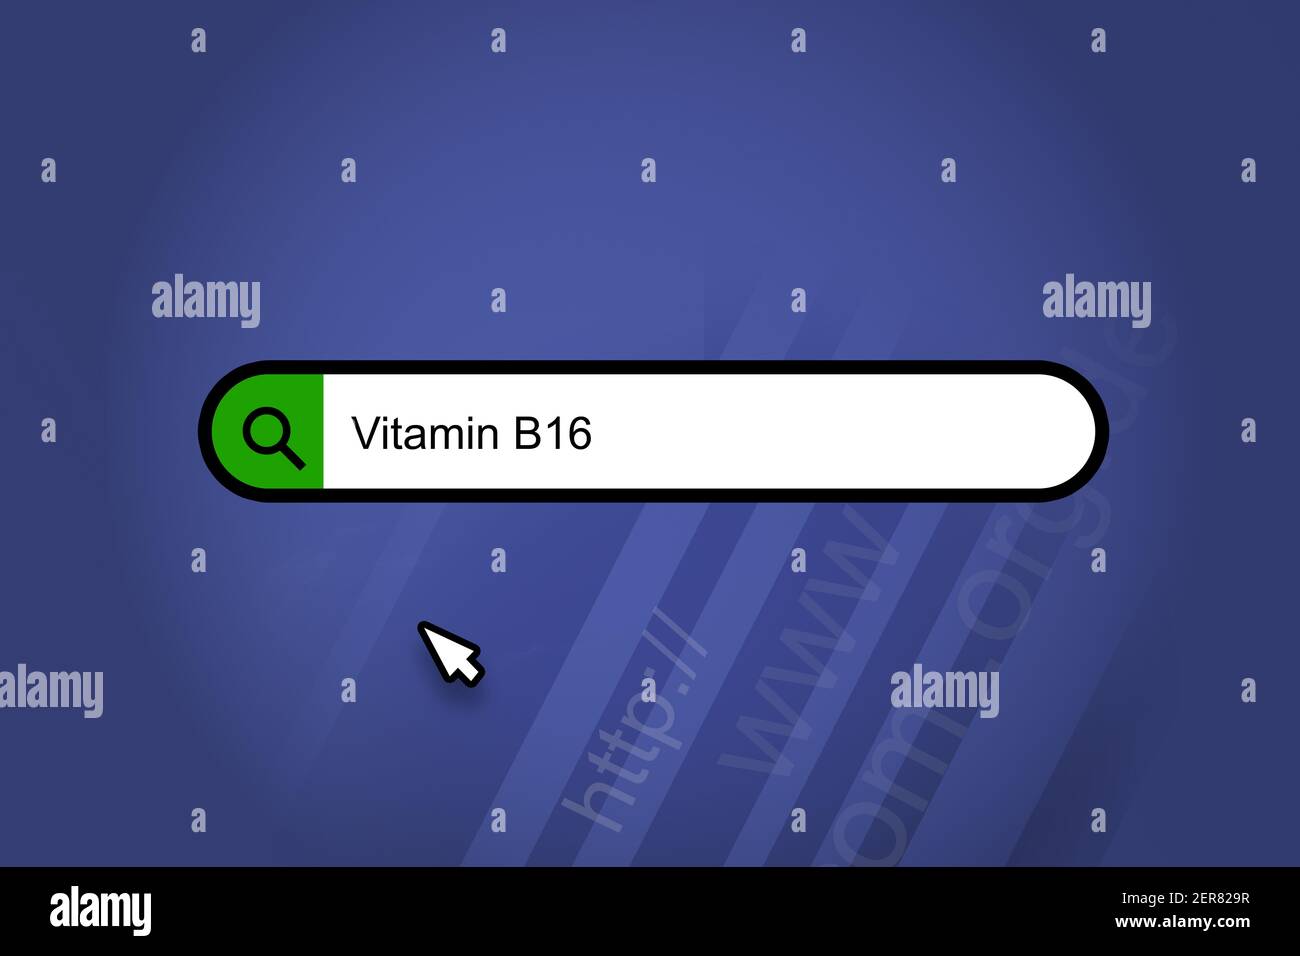 Vitamina B16 - motor de búsqueda, barra de búsqueda con fondo azul  Fotografía de stock - Alamy